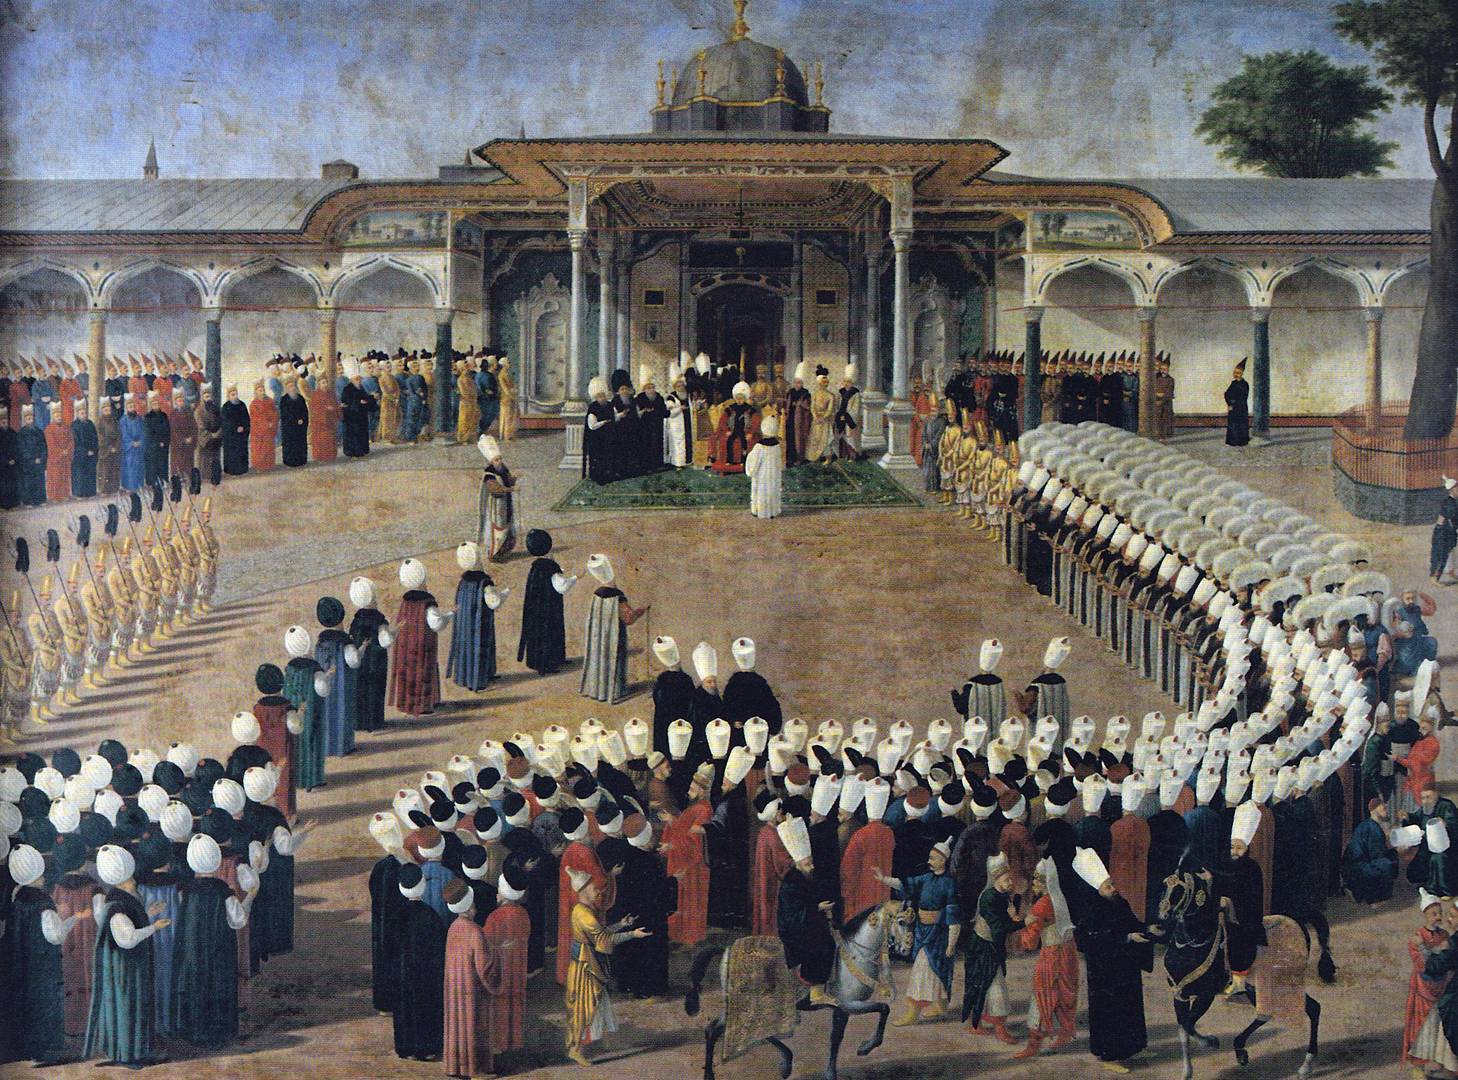 Селим III принимает сановников у «Врат блаженства» («Дер-и-Саадет») дворца Топкапы.